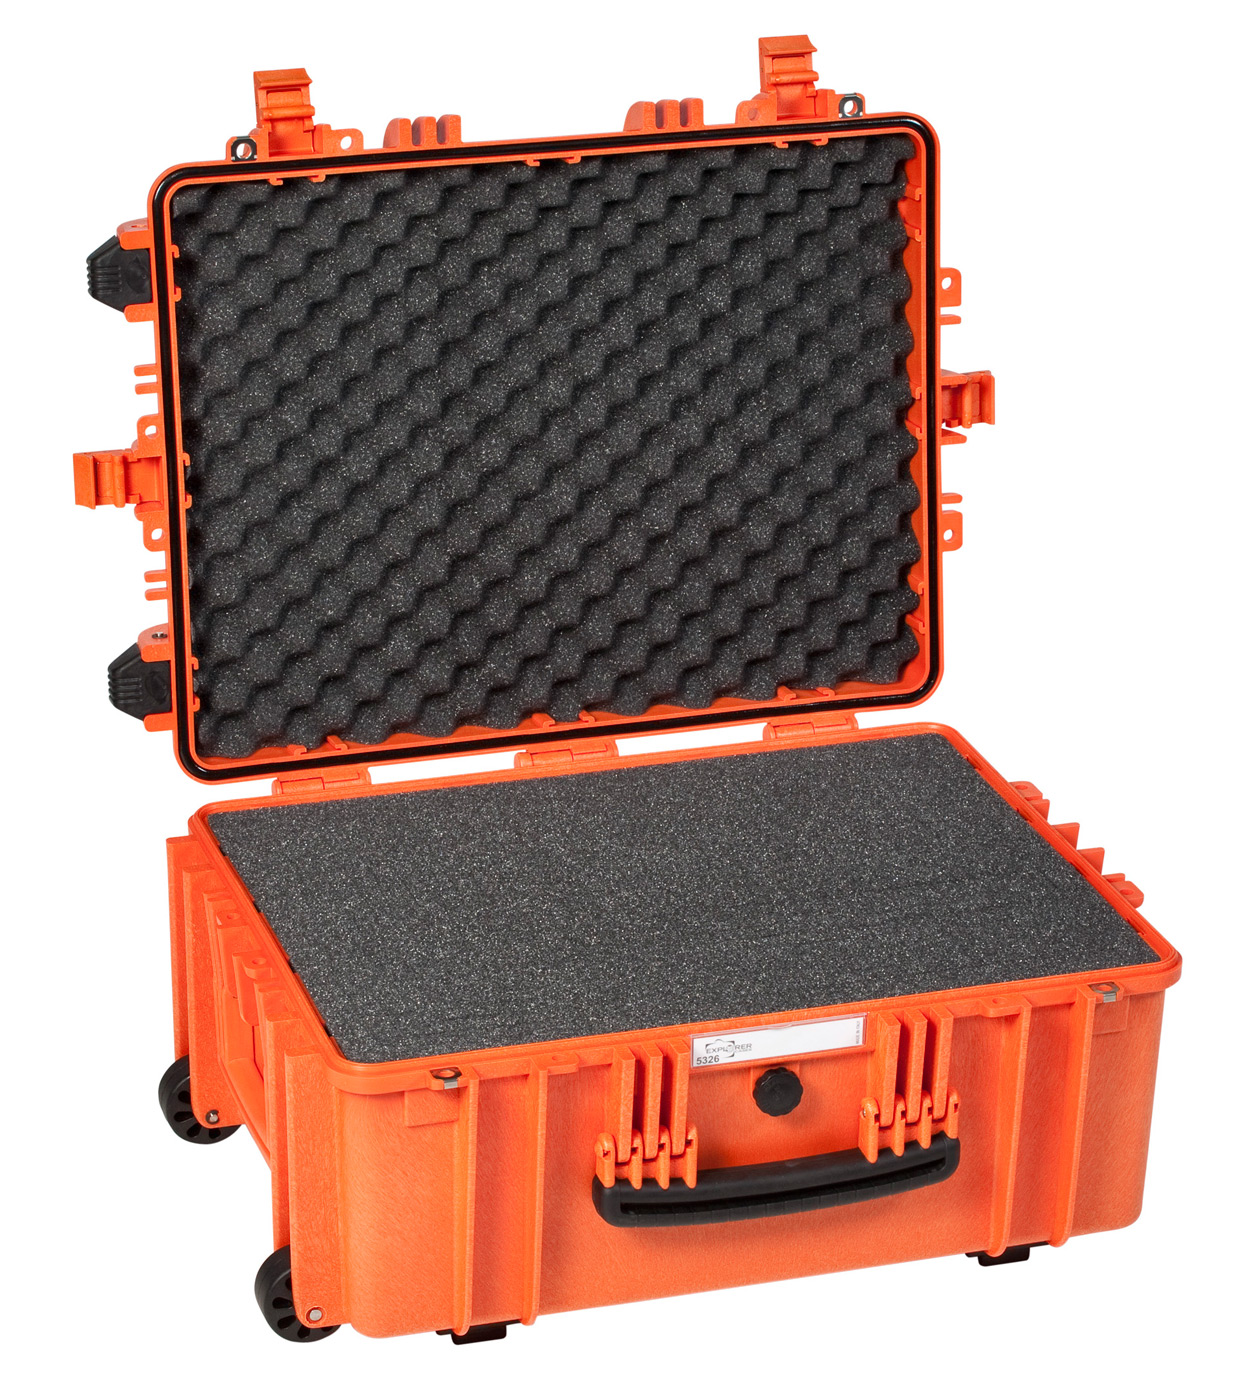 Maleta Explorer Cases 5326 naranja | Maletas Estancas